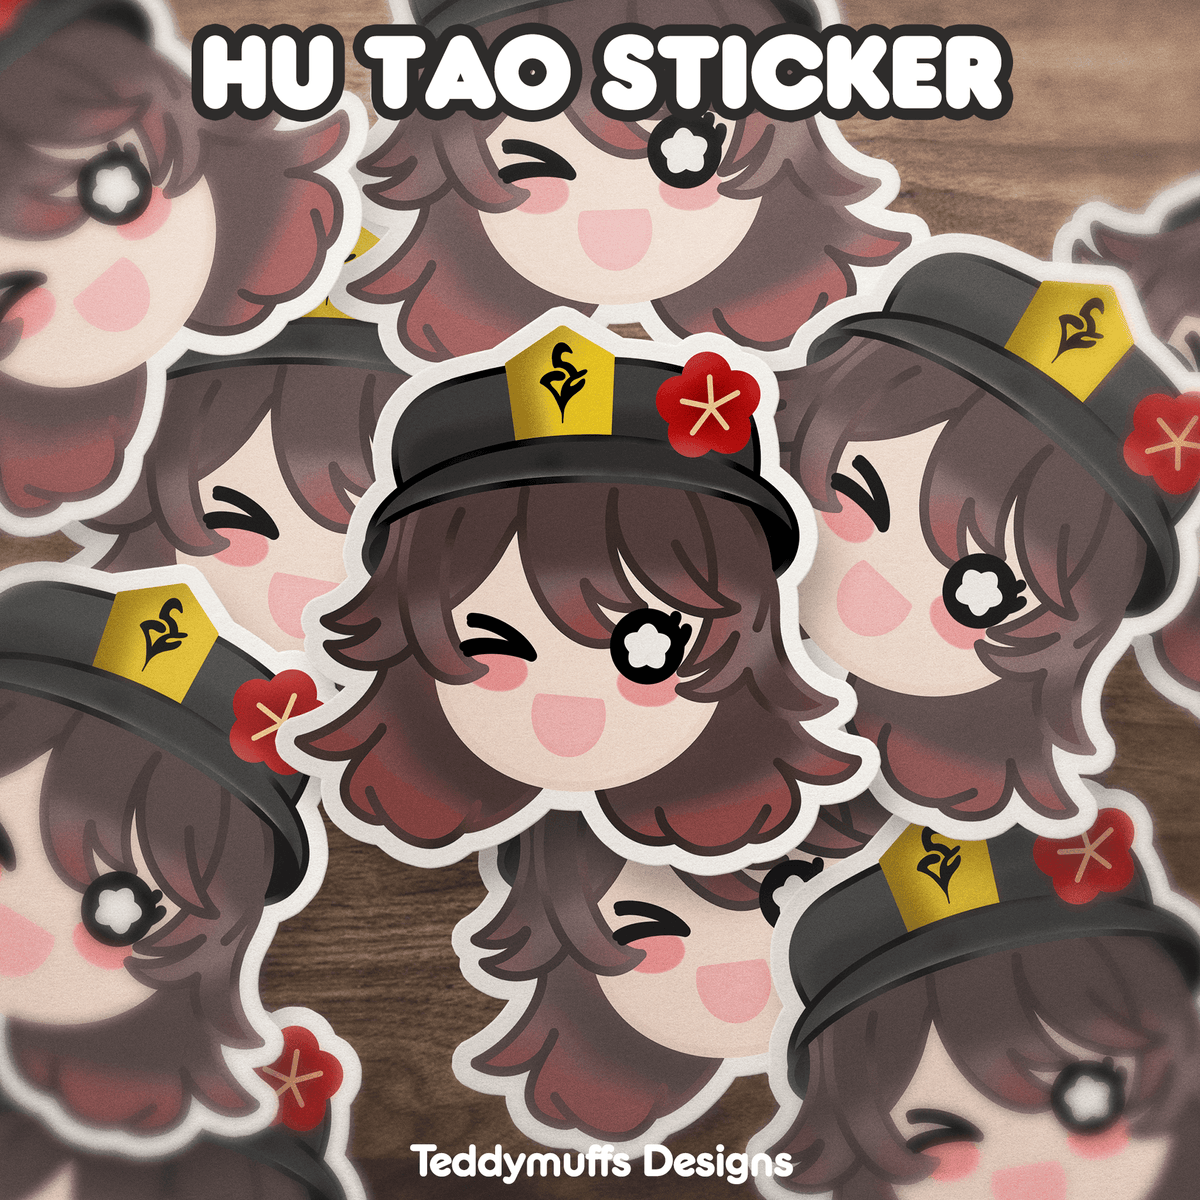 Hu Tao Sticker